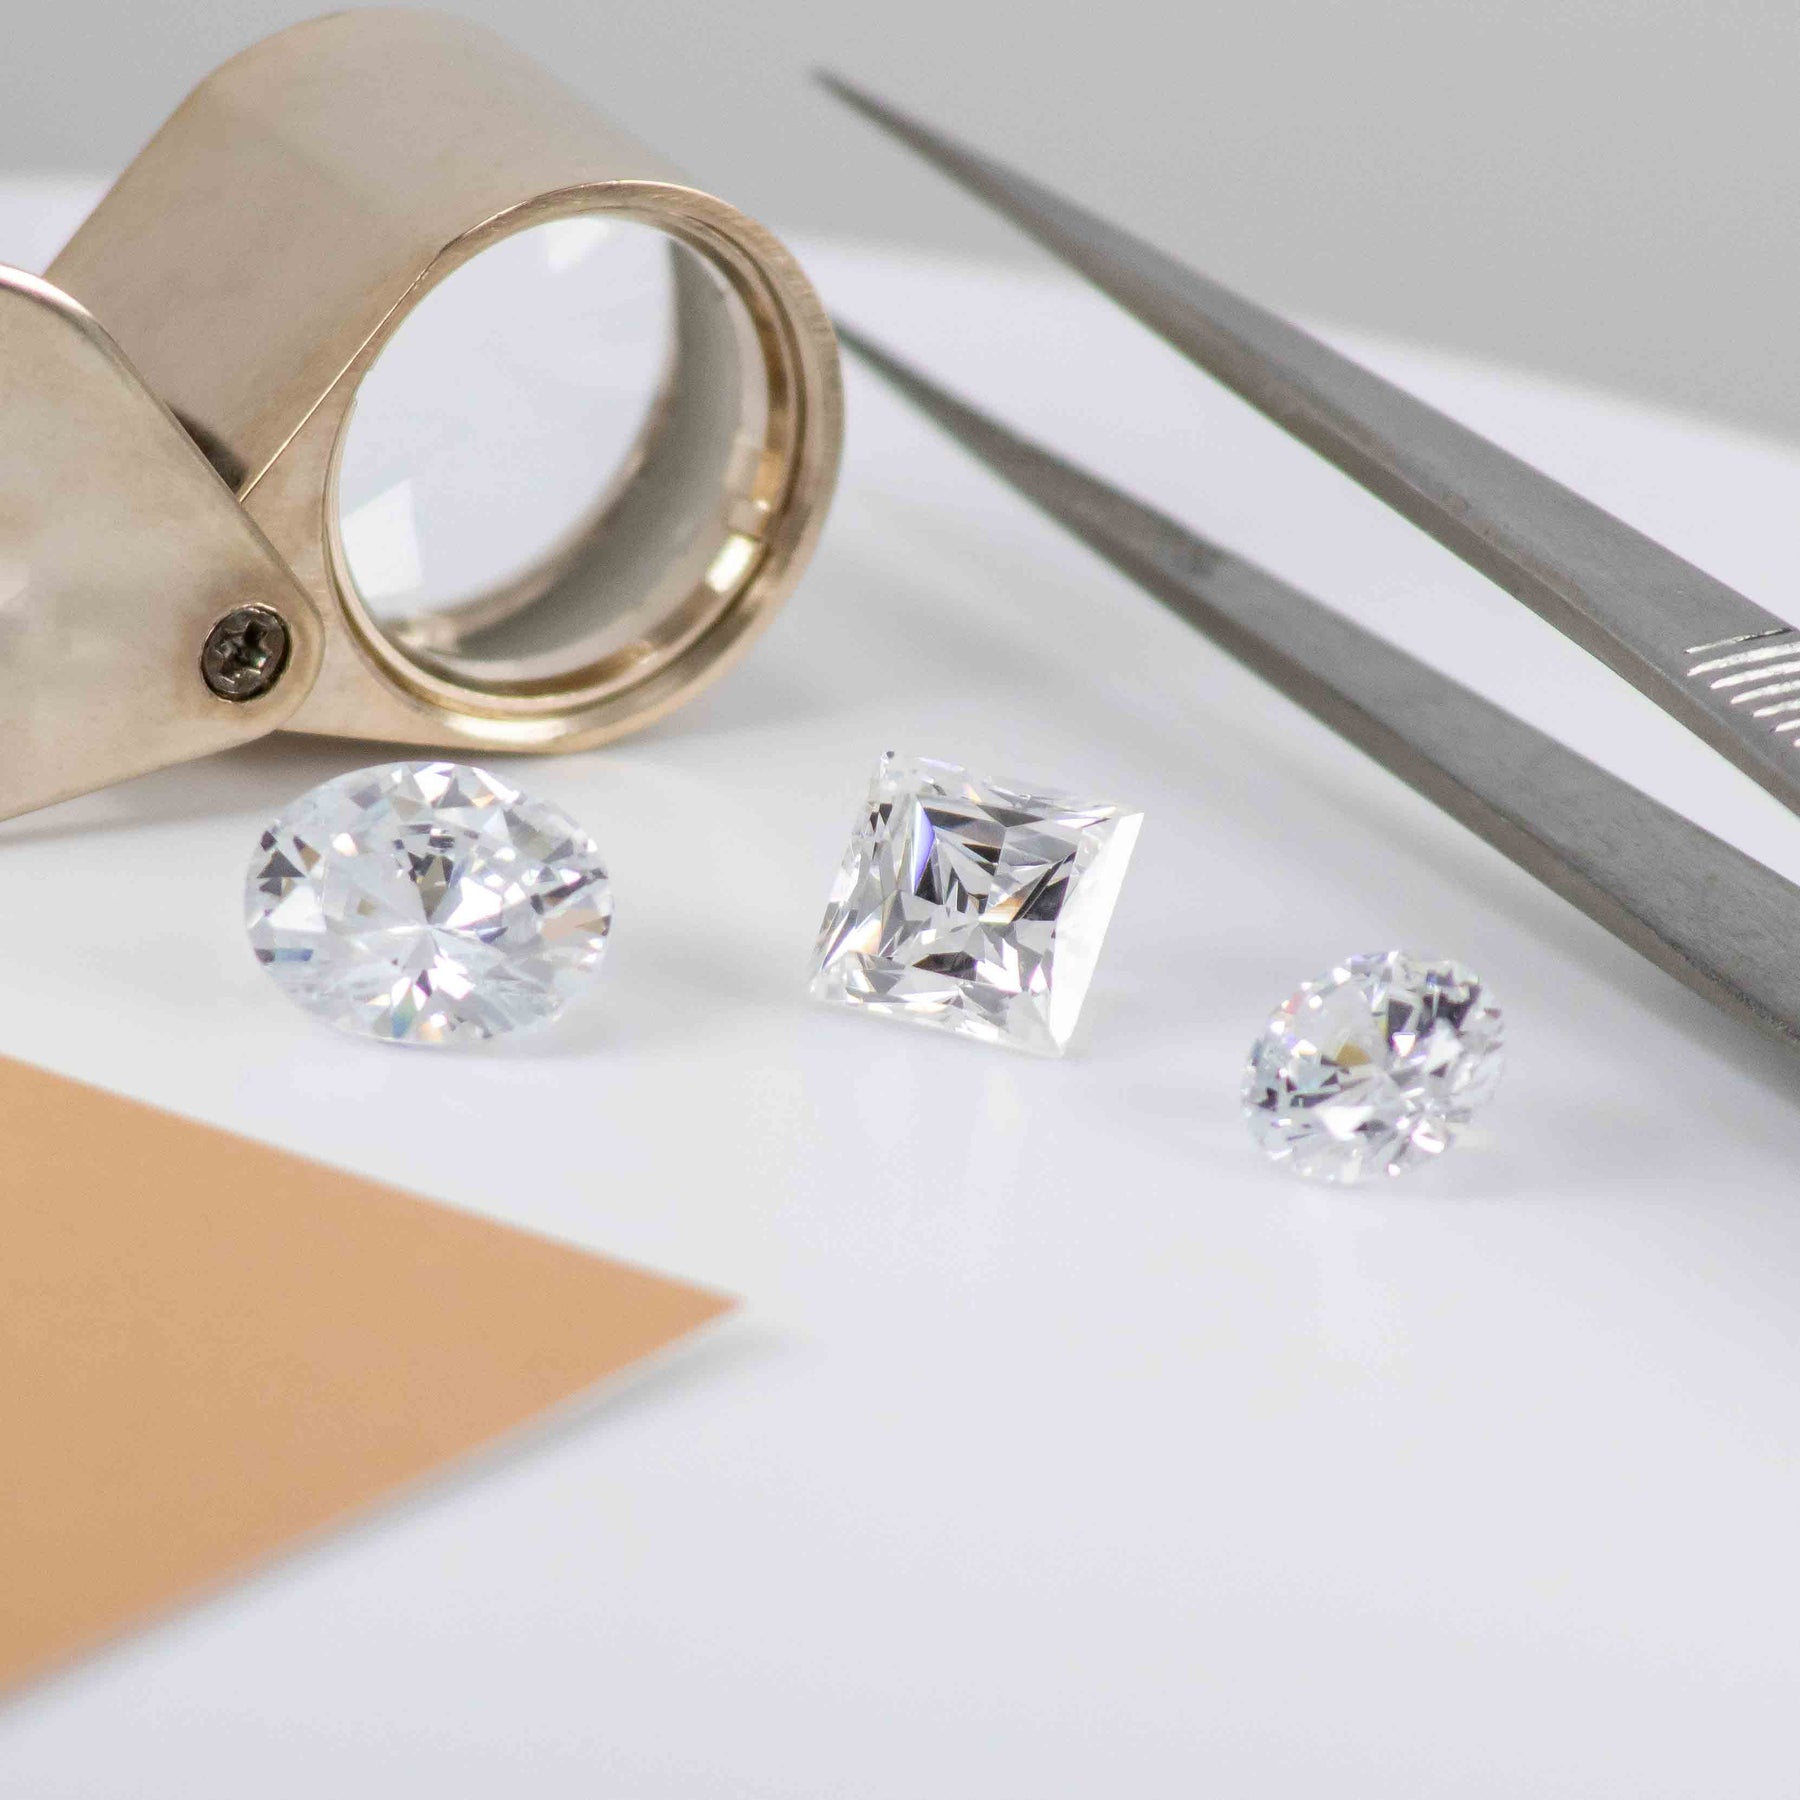 Diamonds with loupe and tweezers | Lisa Robin